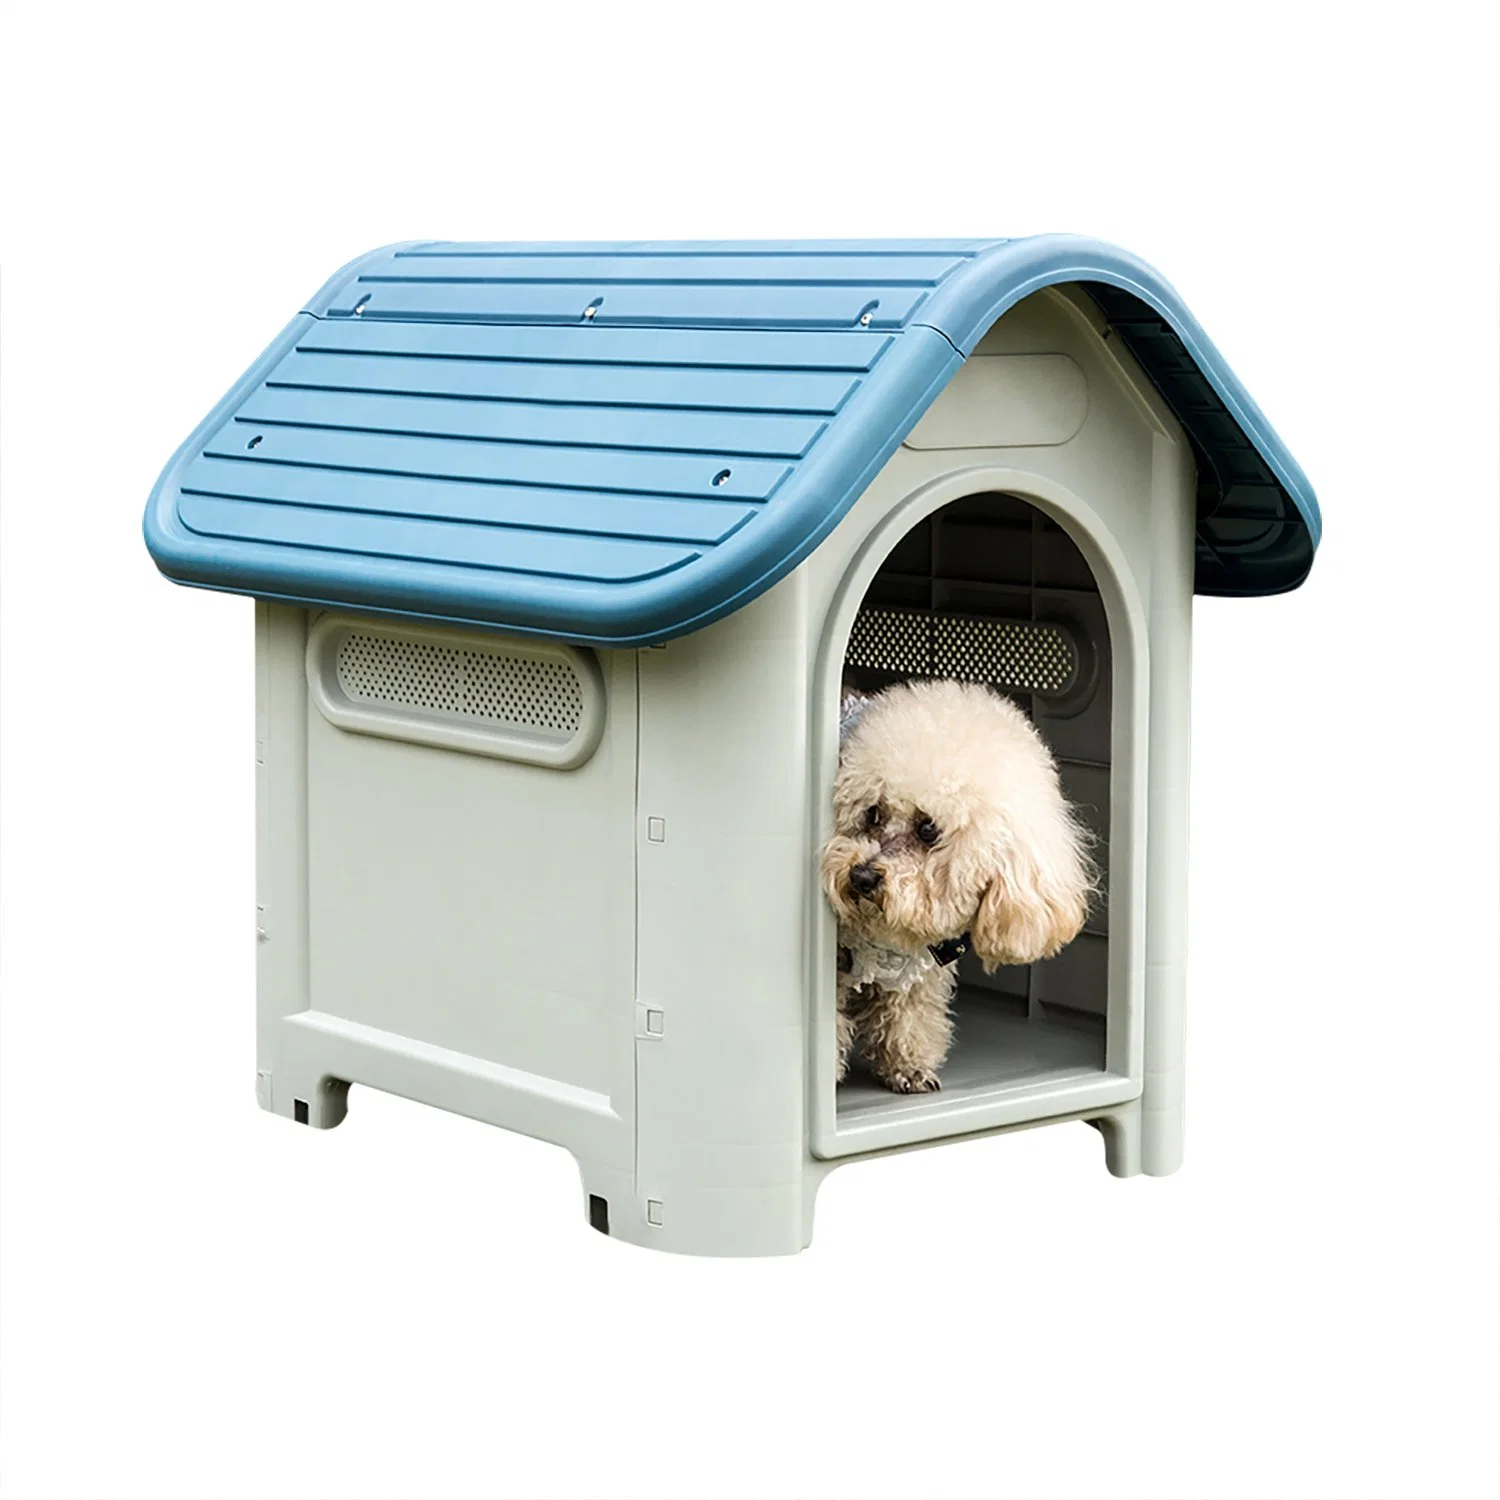 Heißer Verkauf Großhandel Hohe Qualität All-Season-Verfügbarkeit Outdoor / Indoor Dog House Umweltfreundliche Wasserdicht und Sonnenschutz langlebige Kunststoff Haustier Haus mit Fenster